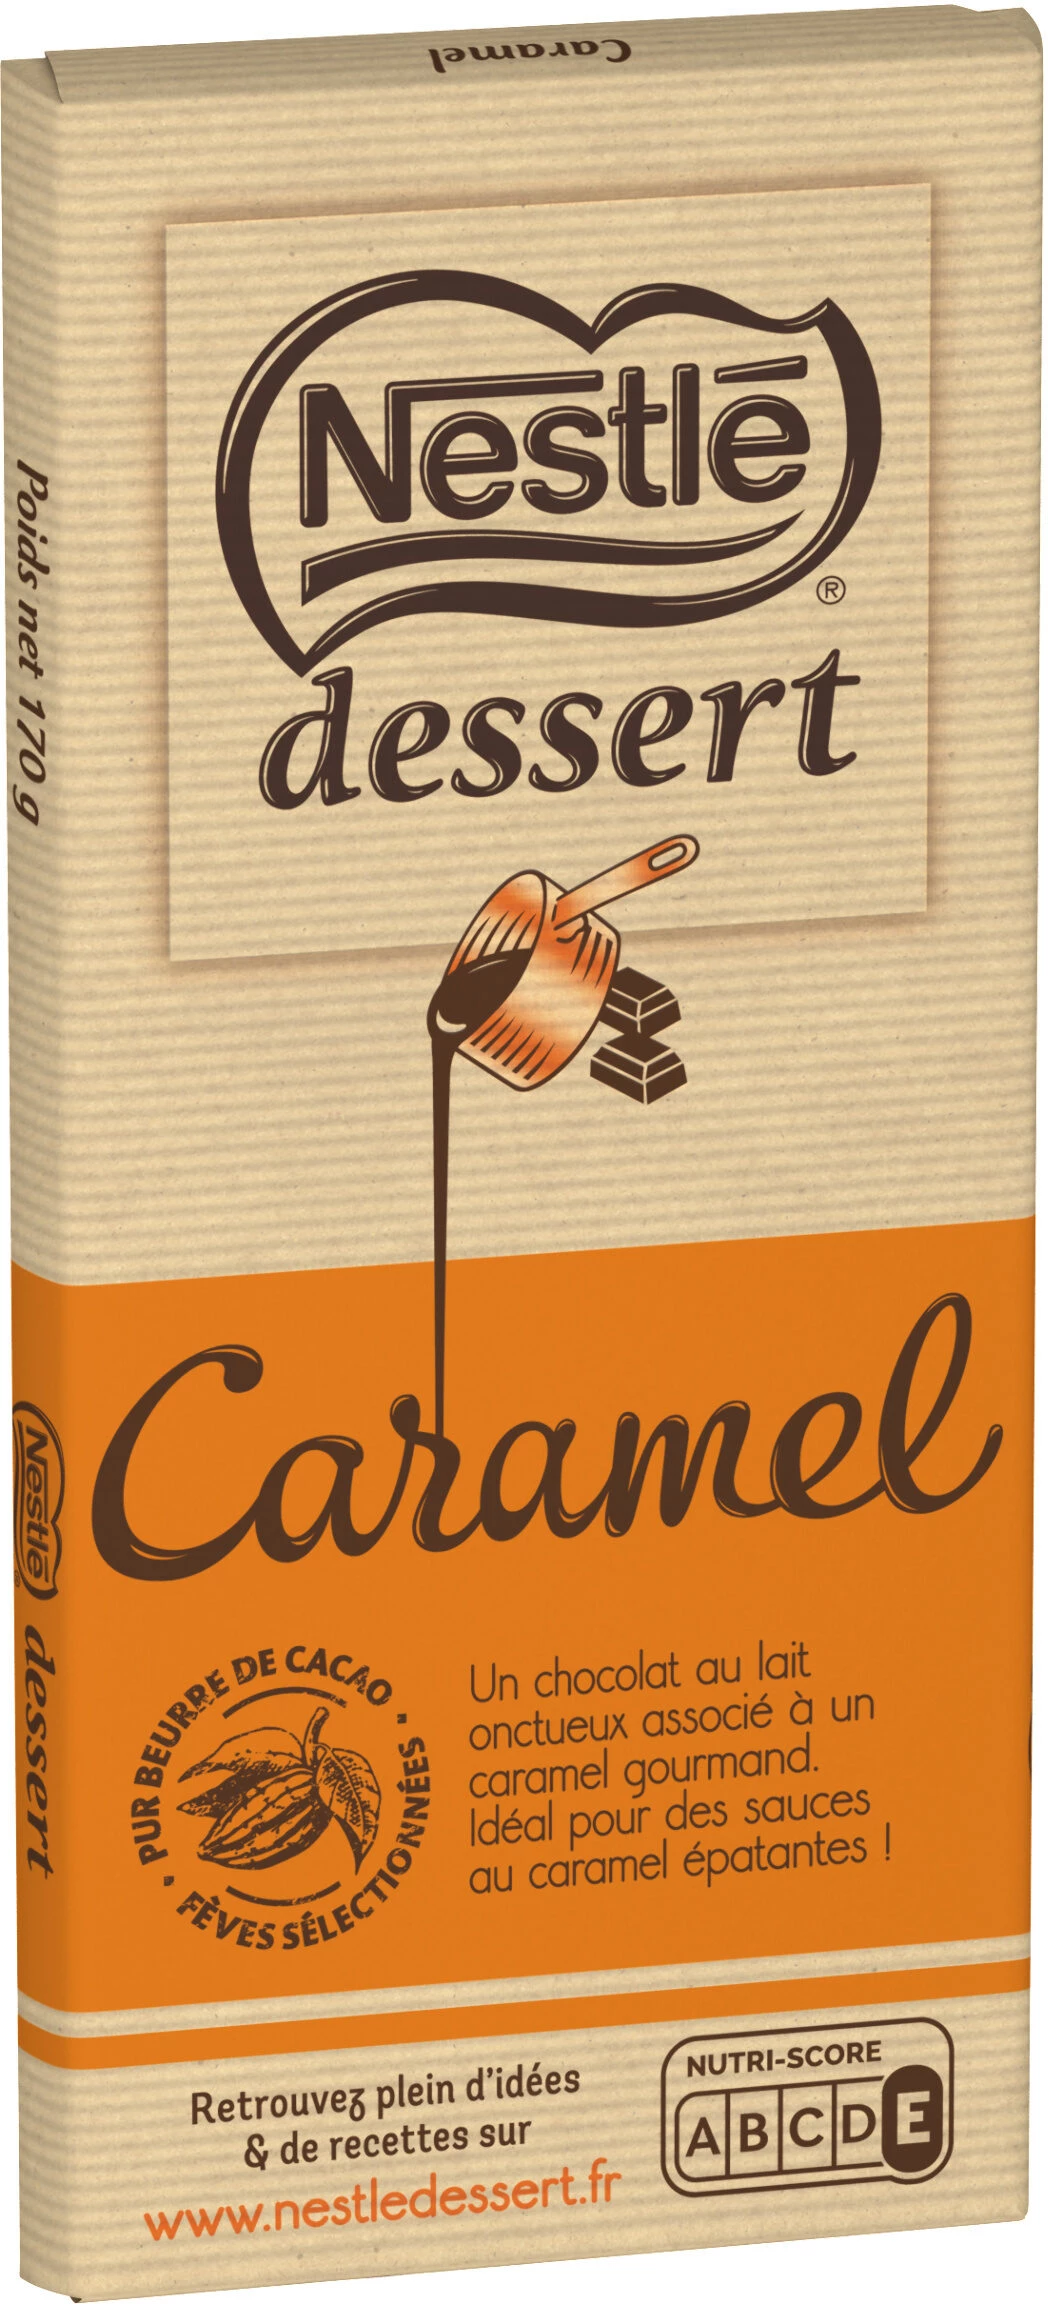 170g Dessert Caramel Nestle